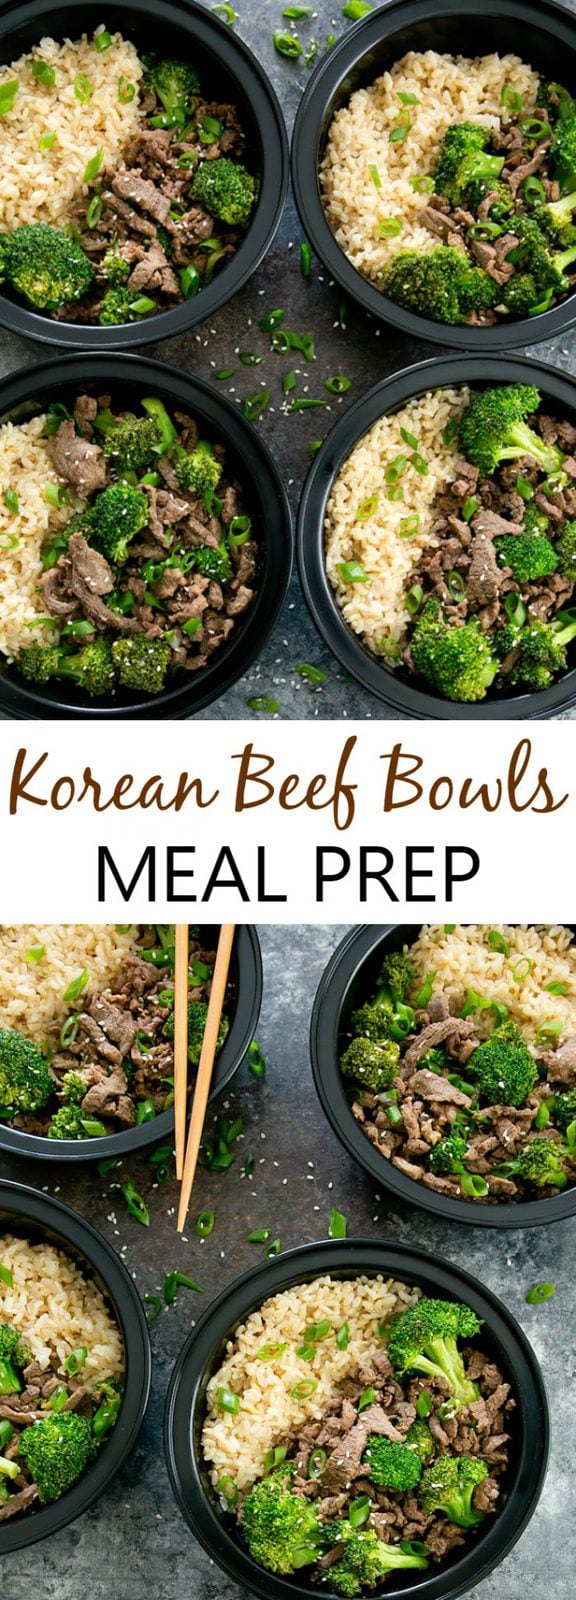 Korean Beef Bowls Weekly Meal Prep